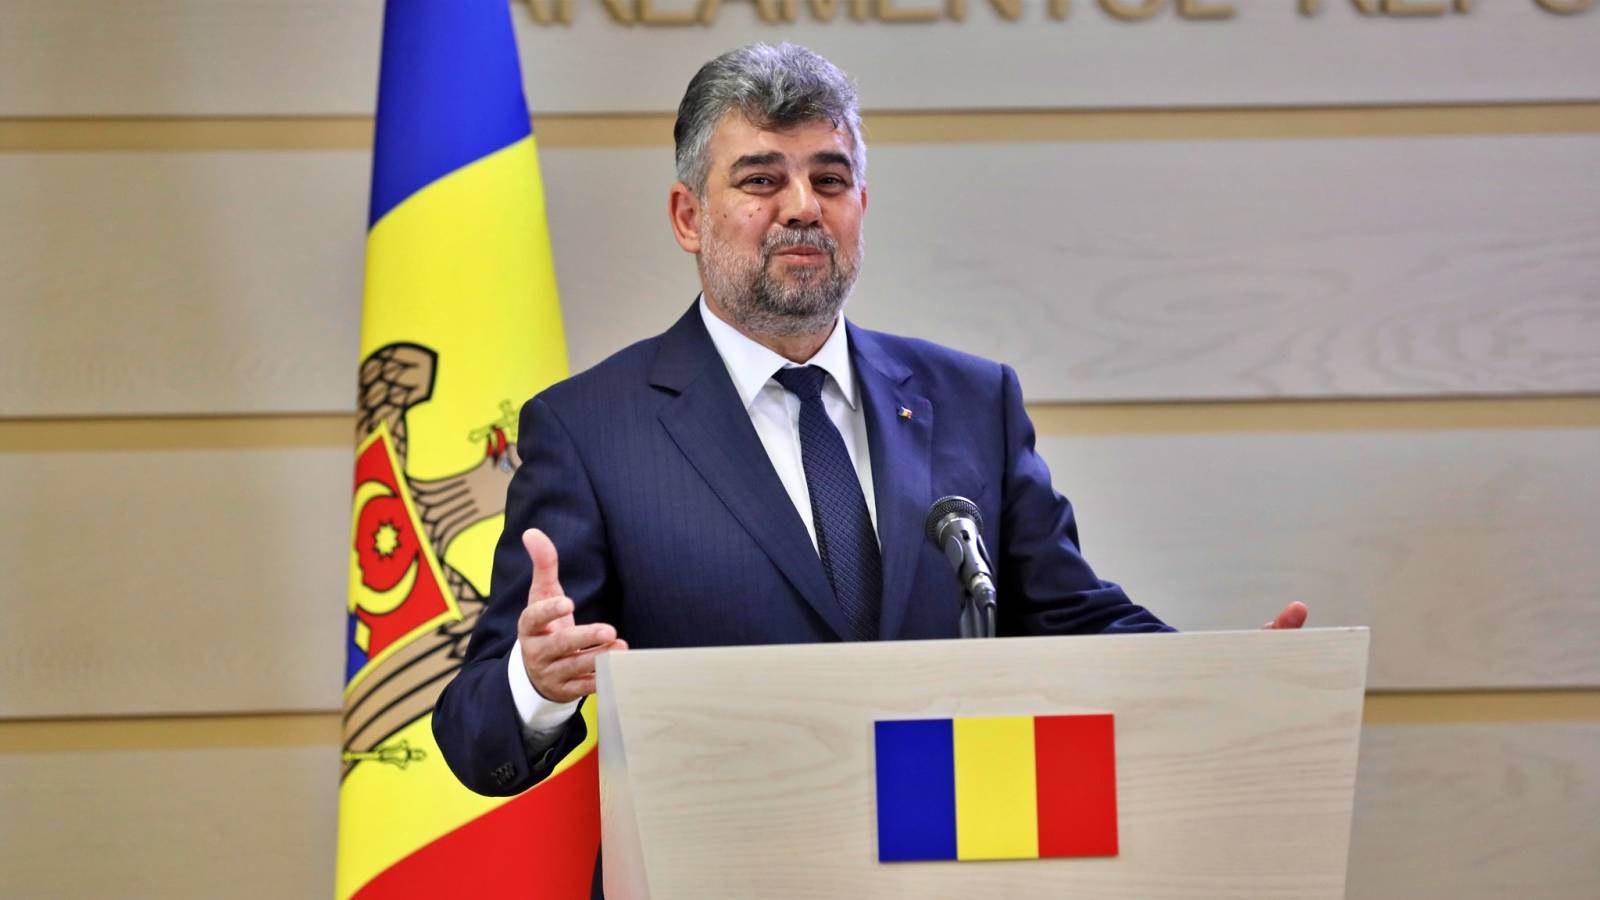 Marcel Ciolacu Anunturile Oficiale ULTIMA ORA Romani Presedintelui PSD